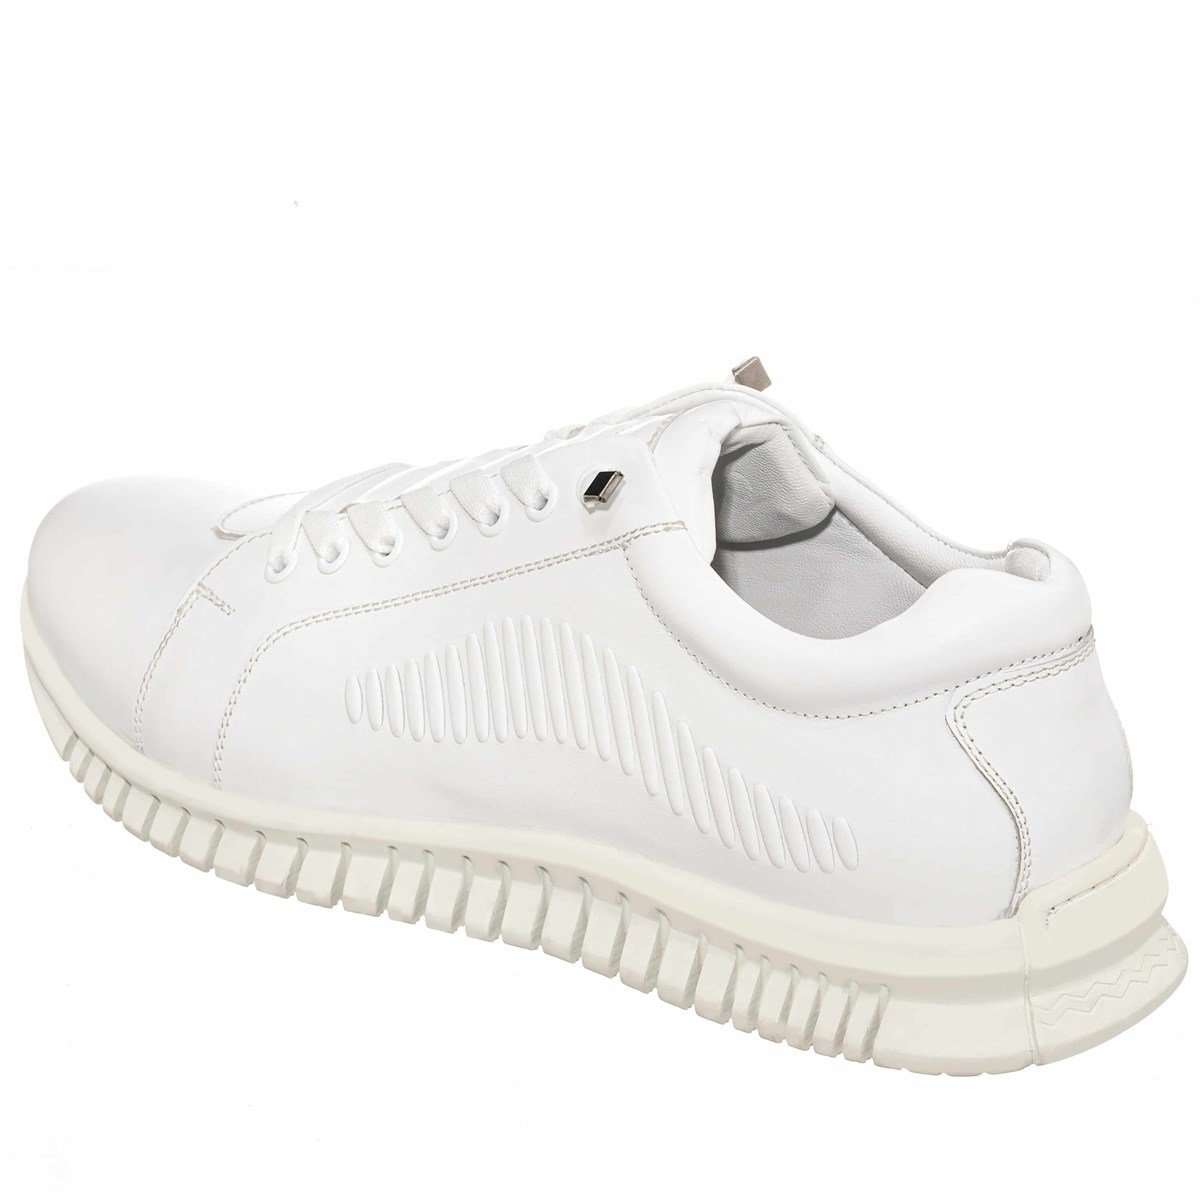 OGS101 Beyaz Dana Derisi Vip Büyük Numara Erkek Spor ayakkabı Kacuçuk Taban  Rahat Geniş Kalıp Özel Seri Lastik Bağcıklı